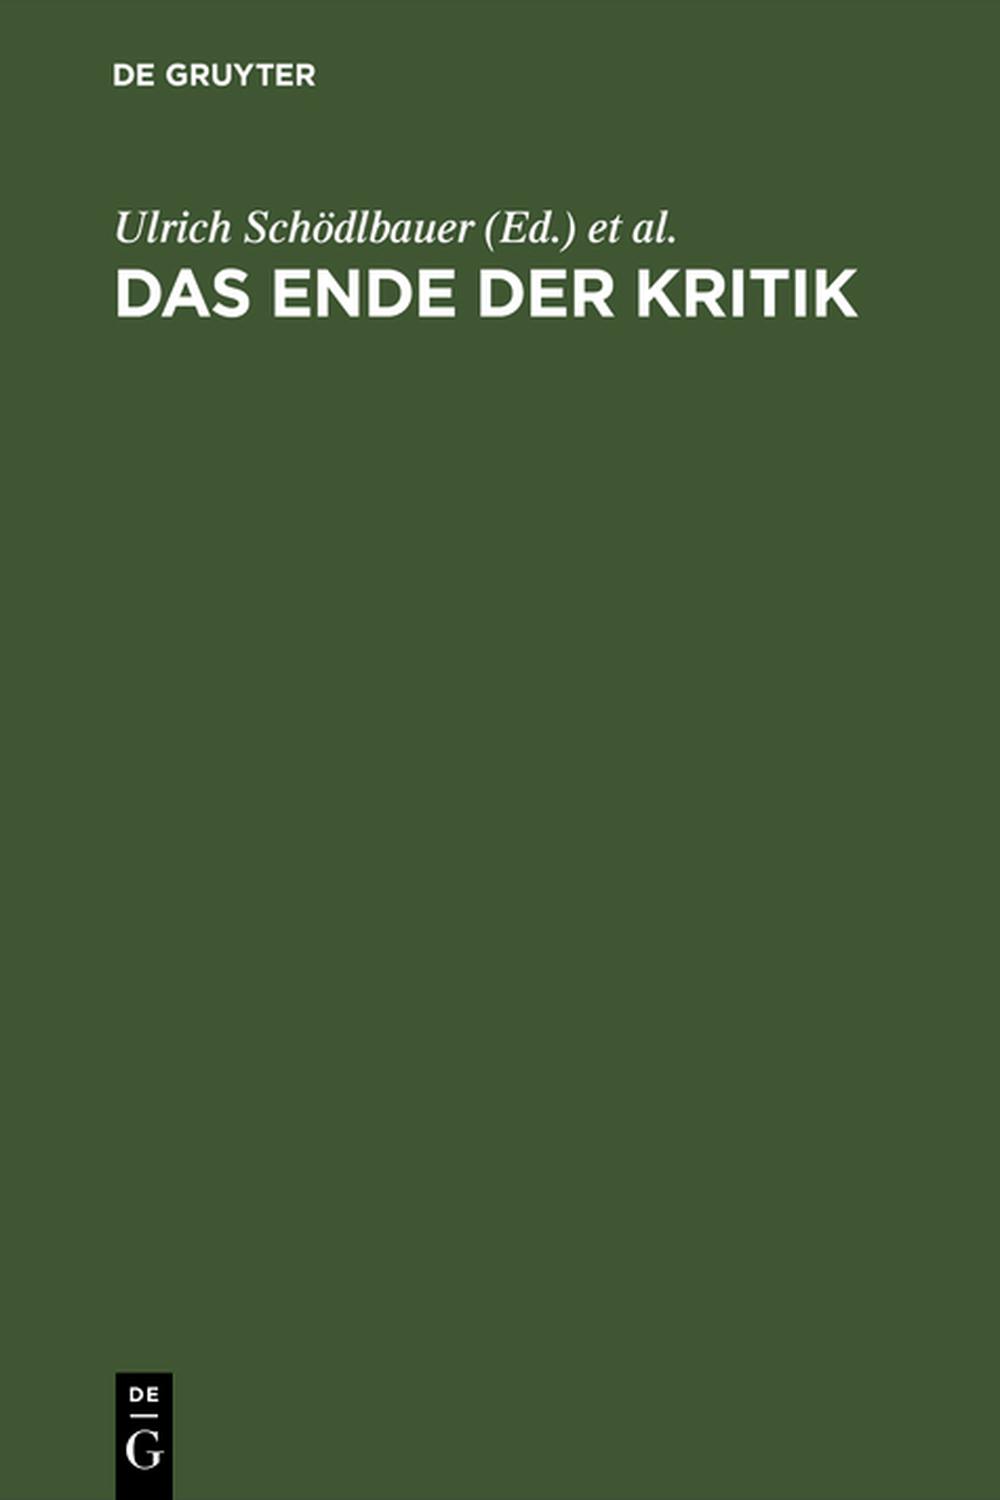 Das Ende der Kritik - Ulrich Schödlbauer, Joachim Vahland